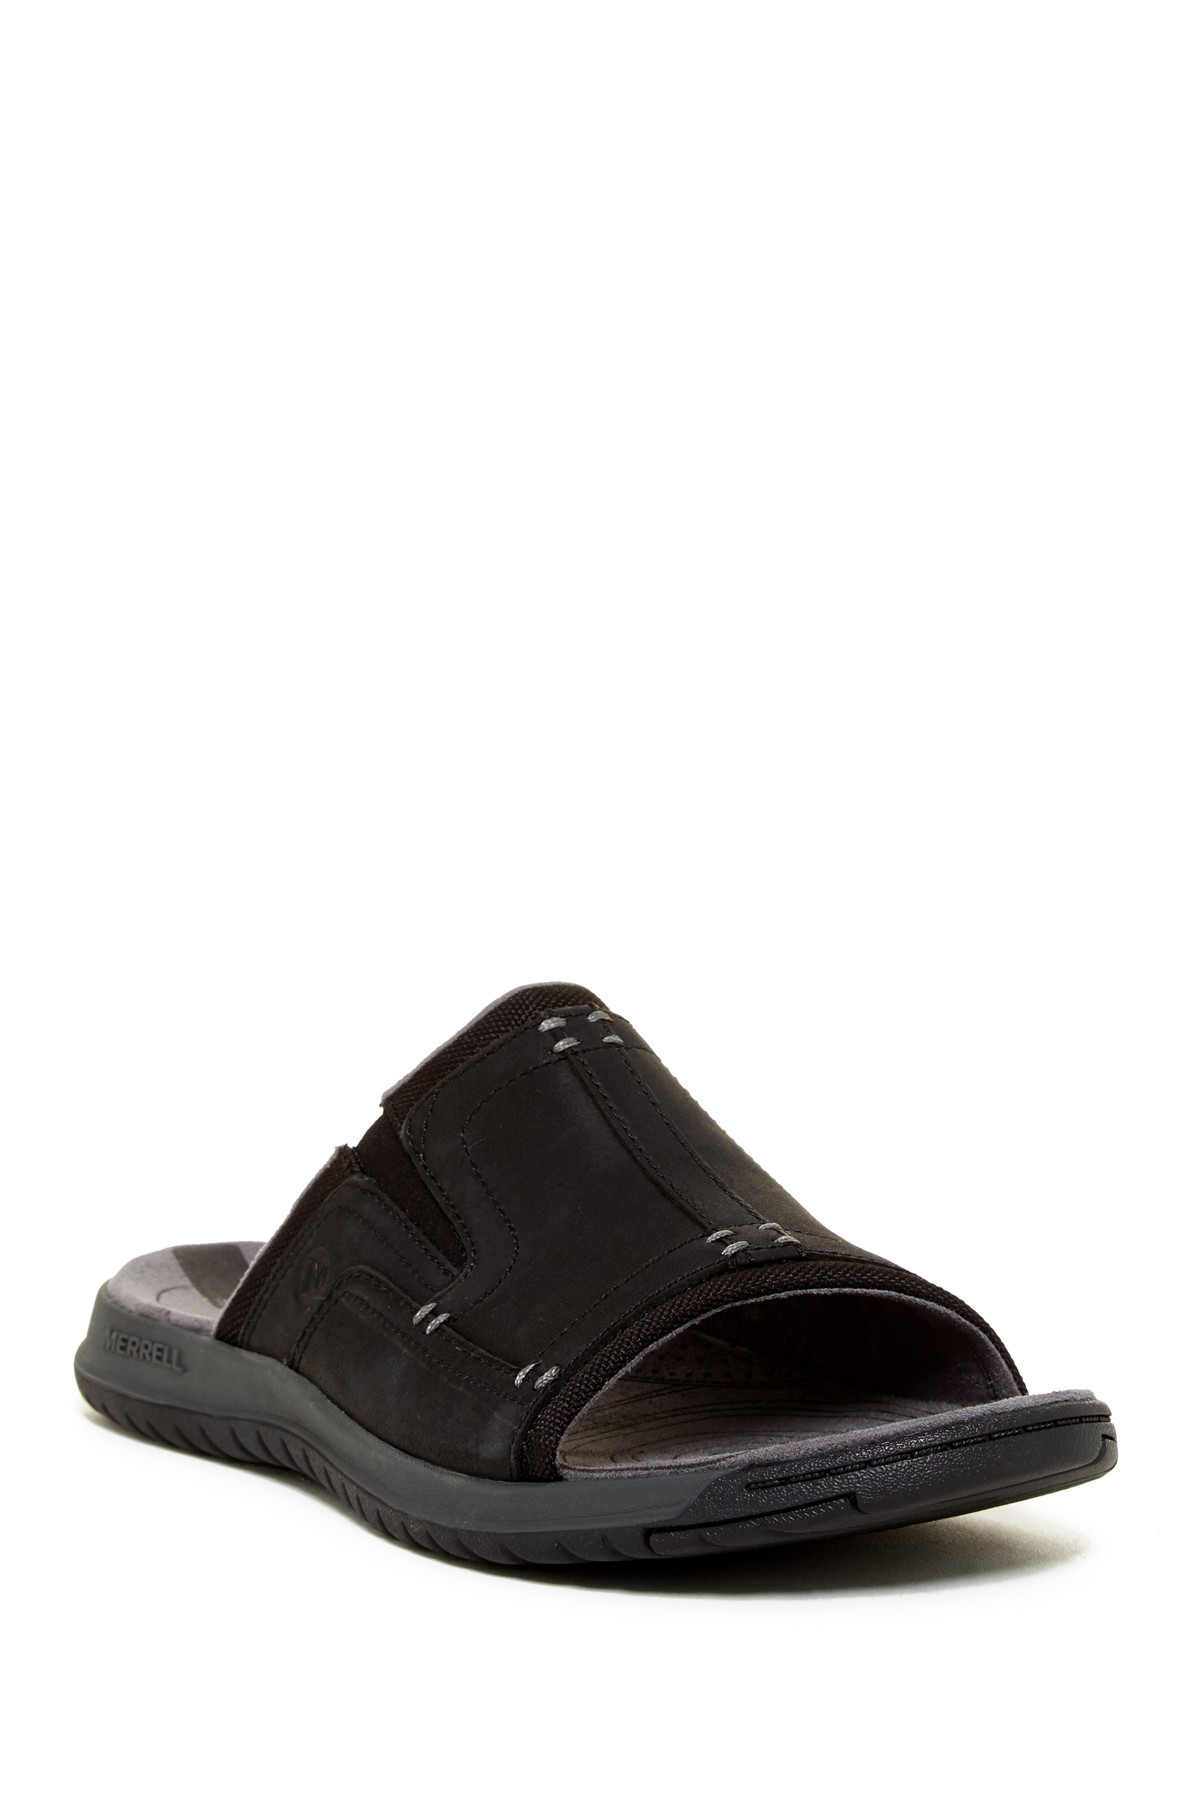 Merrell Leather Traveler Tilt Slide Sandal in Black for Men | Lyst